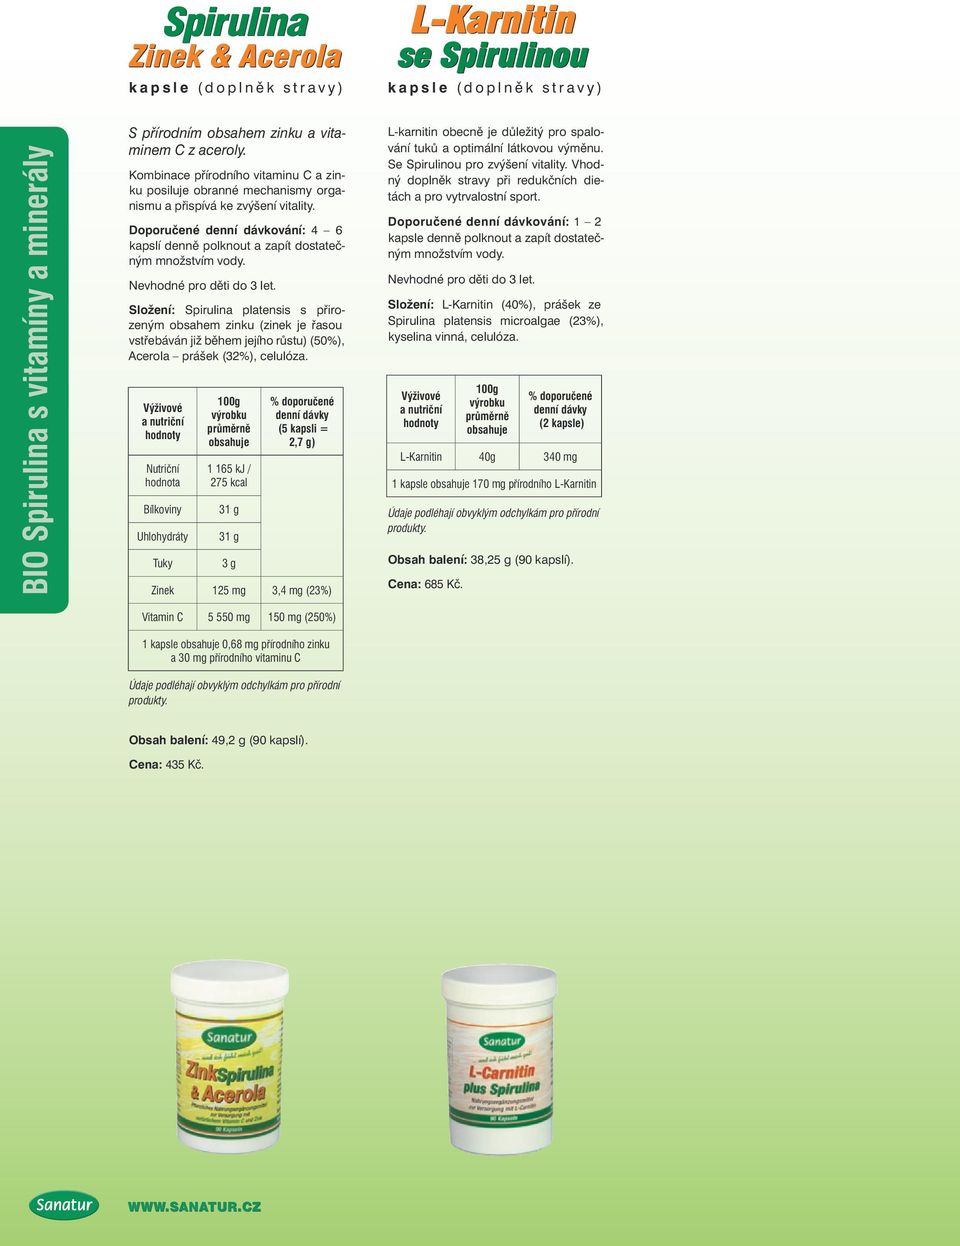 Složení: Spirulina platensis s přirozeným obsahem zinku (zinek je řasou vstřebáván již během jejího růstu) (50%), Acerola prášek (32%), celulóza.